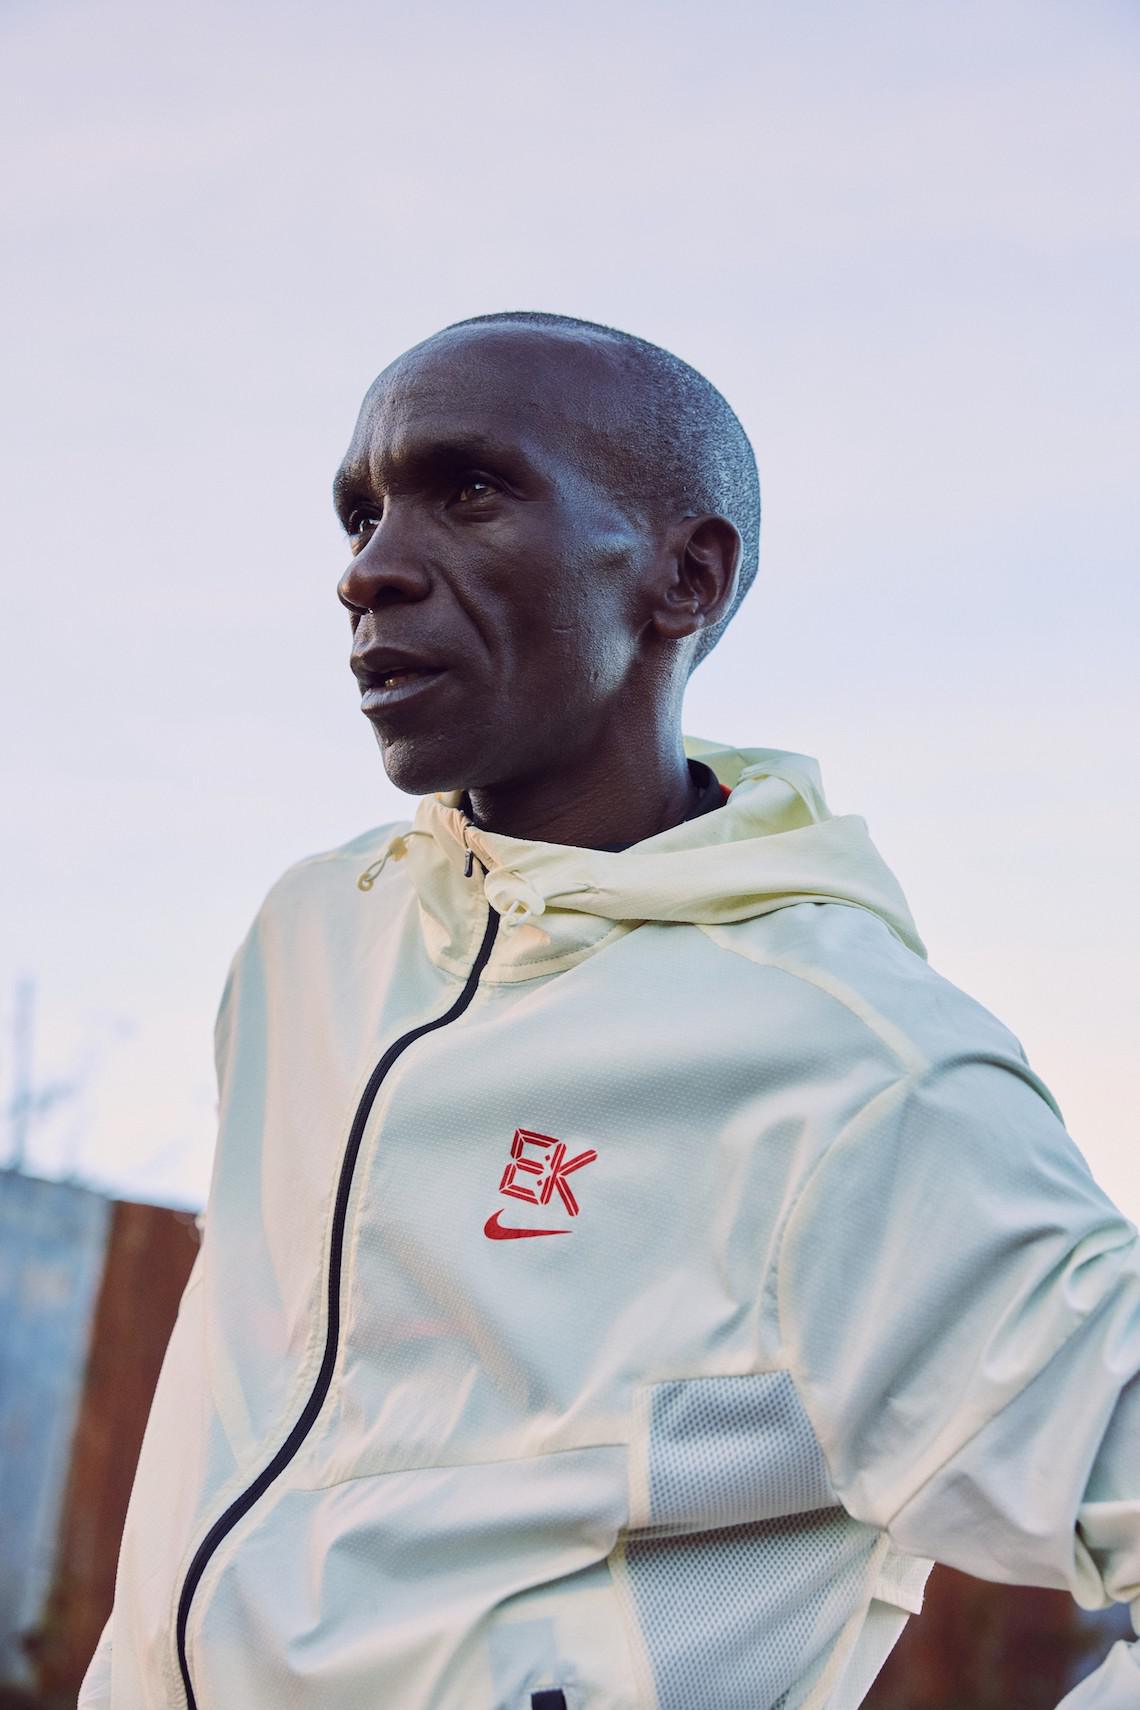 Nike Running apporte l'héritage victorieux d'Eliud Kipchoge et son message d'unité à la collection "EK Umoja".